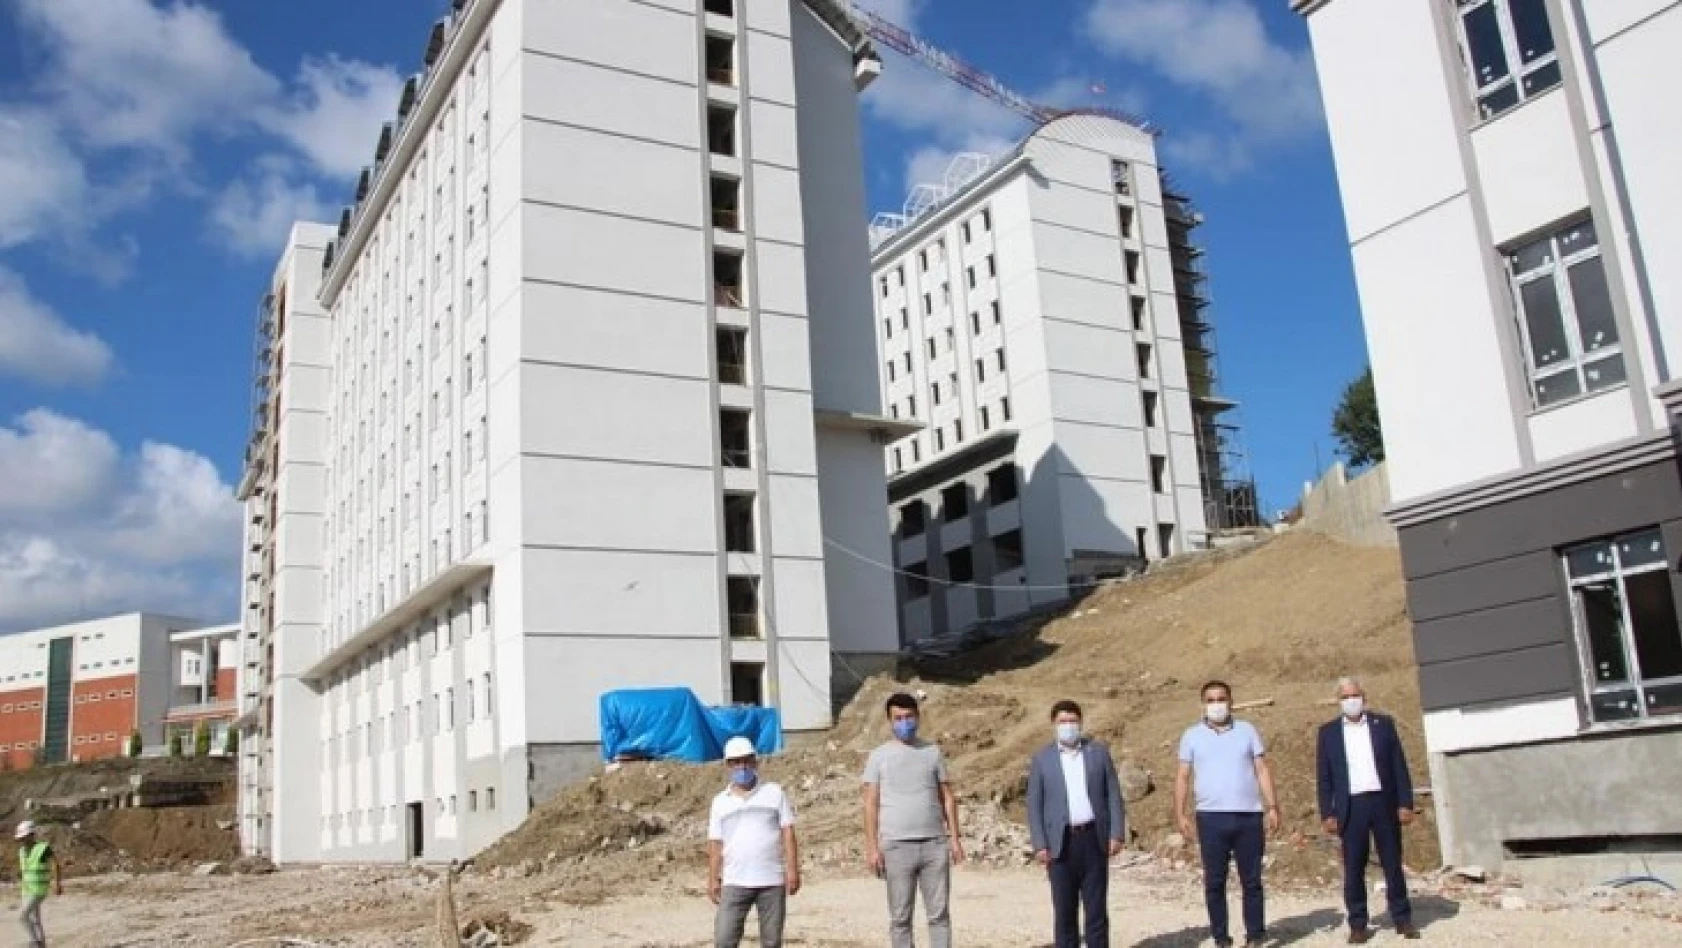 3 bin kişilik öğrenci yurdu inşaatı bitti